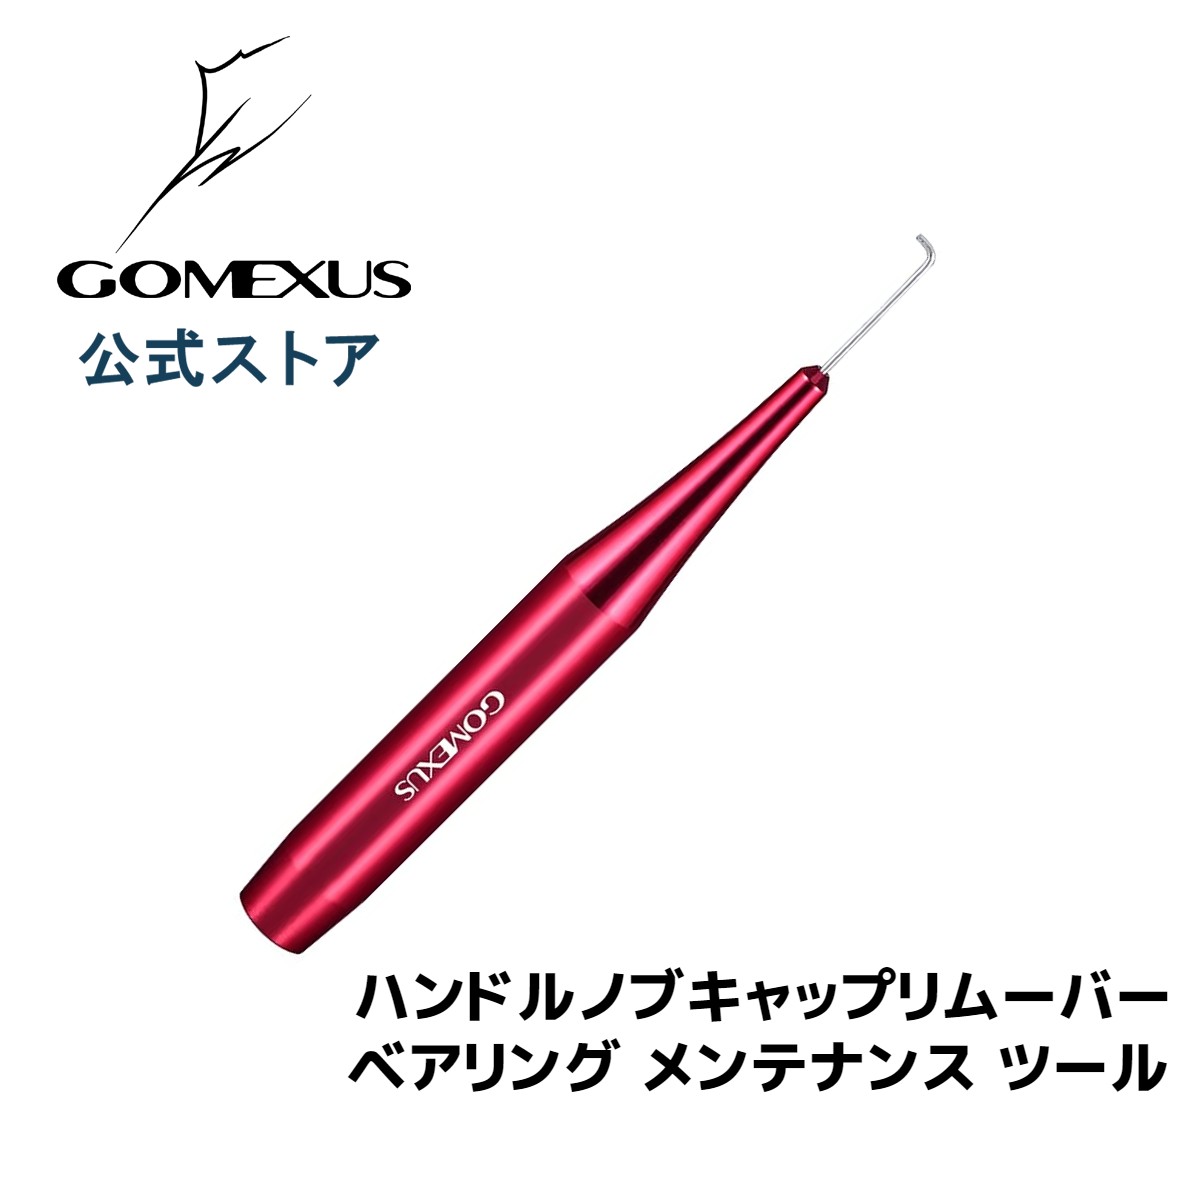  ゴメクサス リール ハンドル ノブキャップリムーバー ベアリング メンテナンス ツール 工具 アルミ製 Gomexus